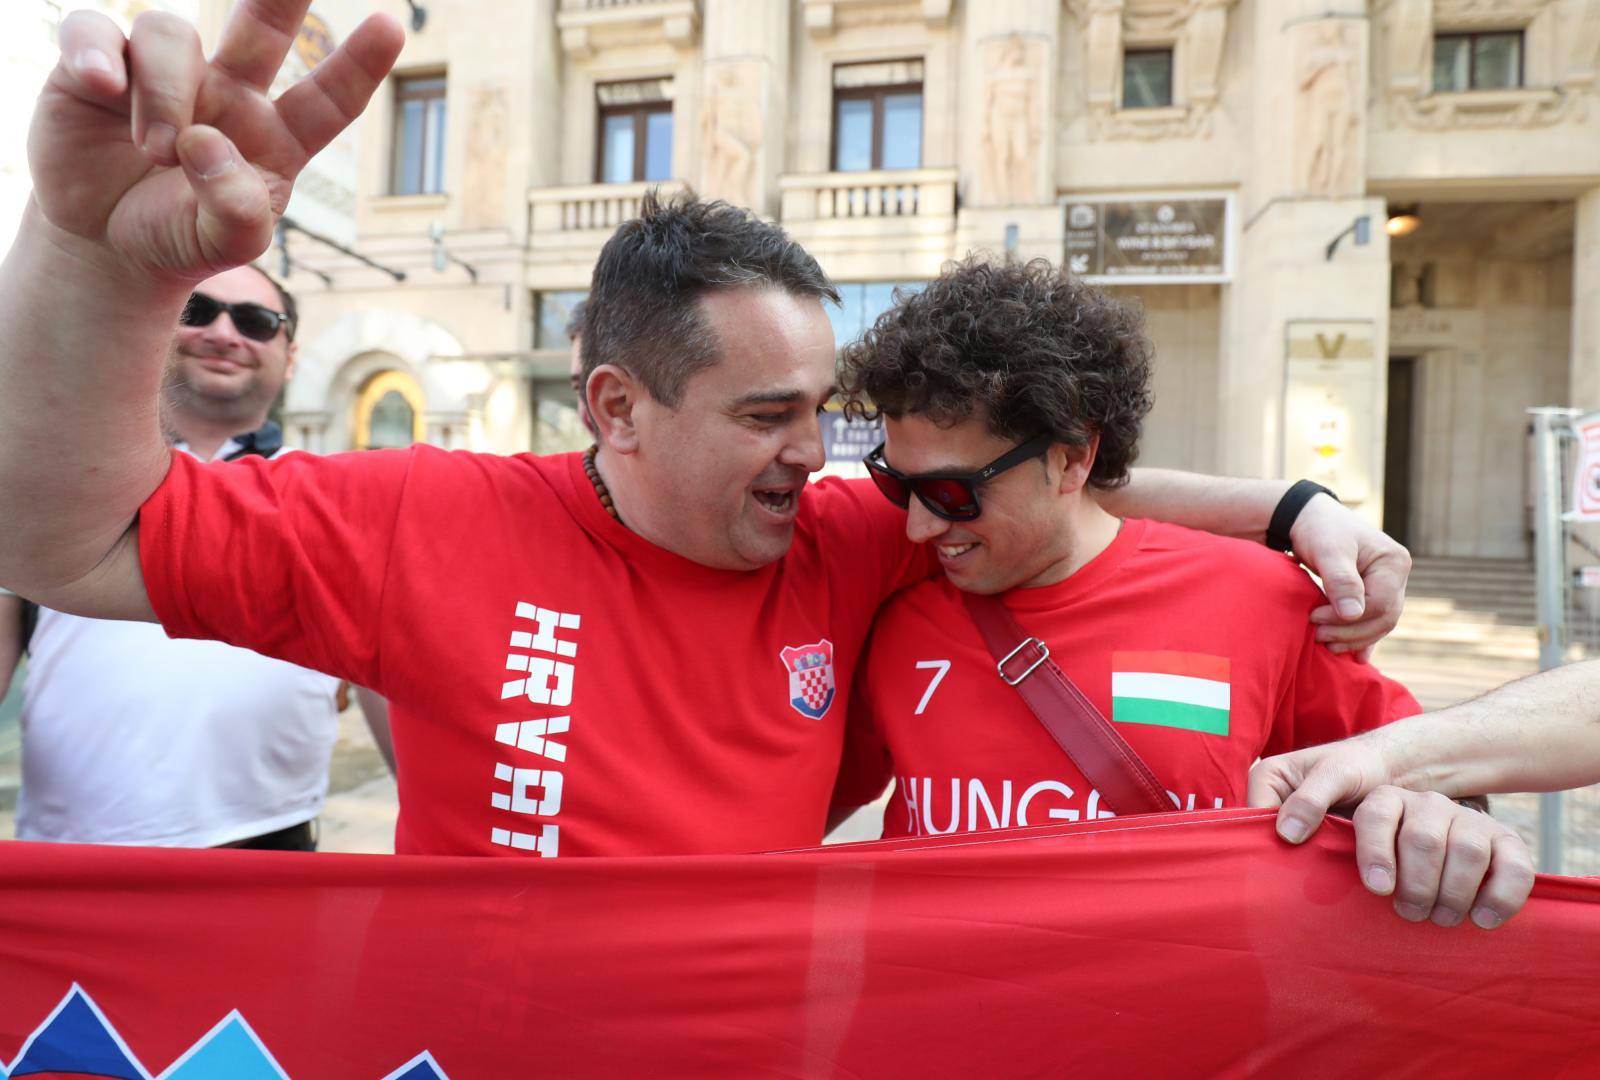 BudimpeÅ¡ta: NavijaÄi na ulicama spremni za utakmicu MaÄarska - Hrvatska